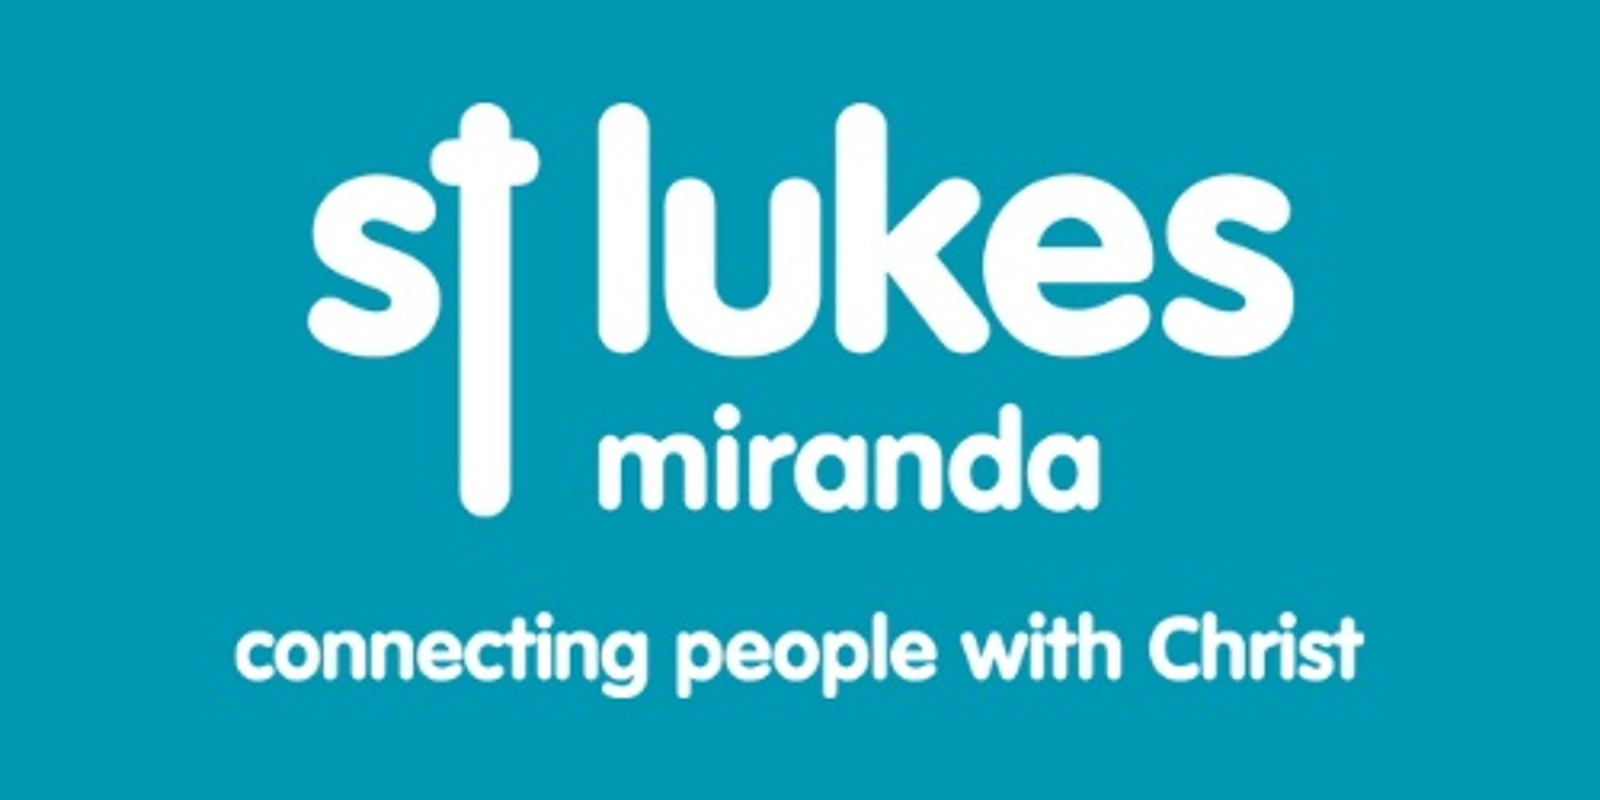 St Luke's Miranda's banner